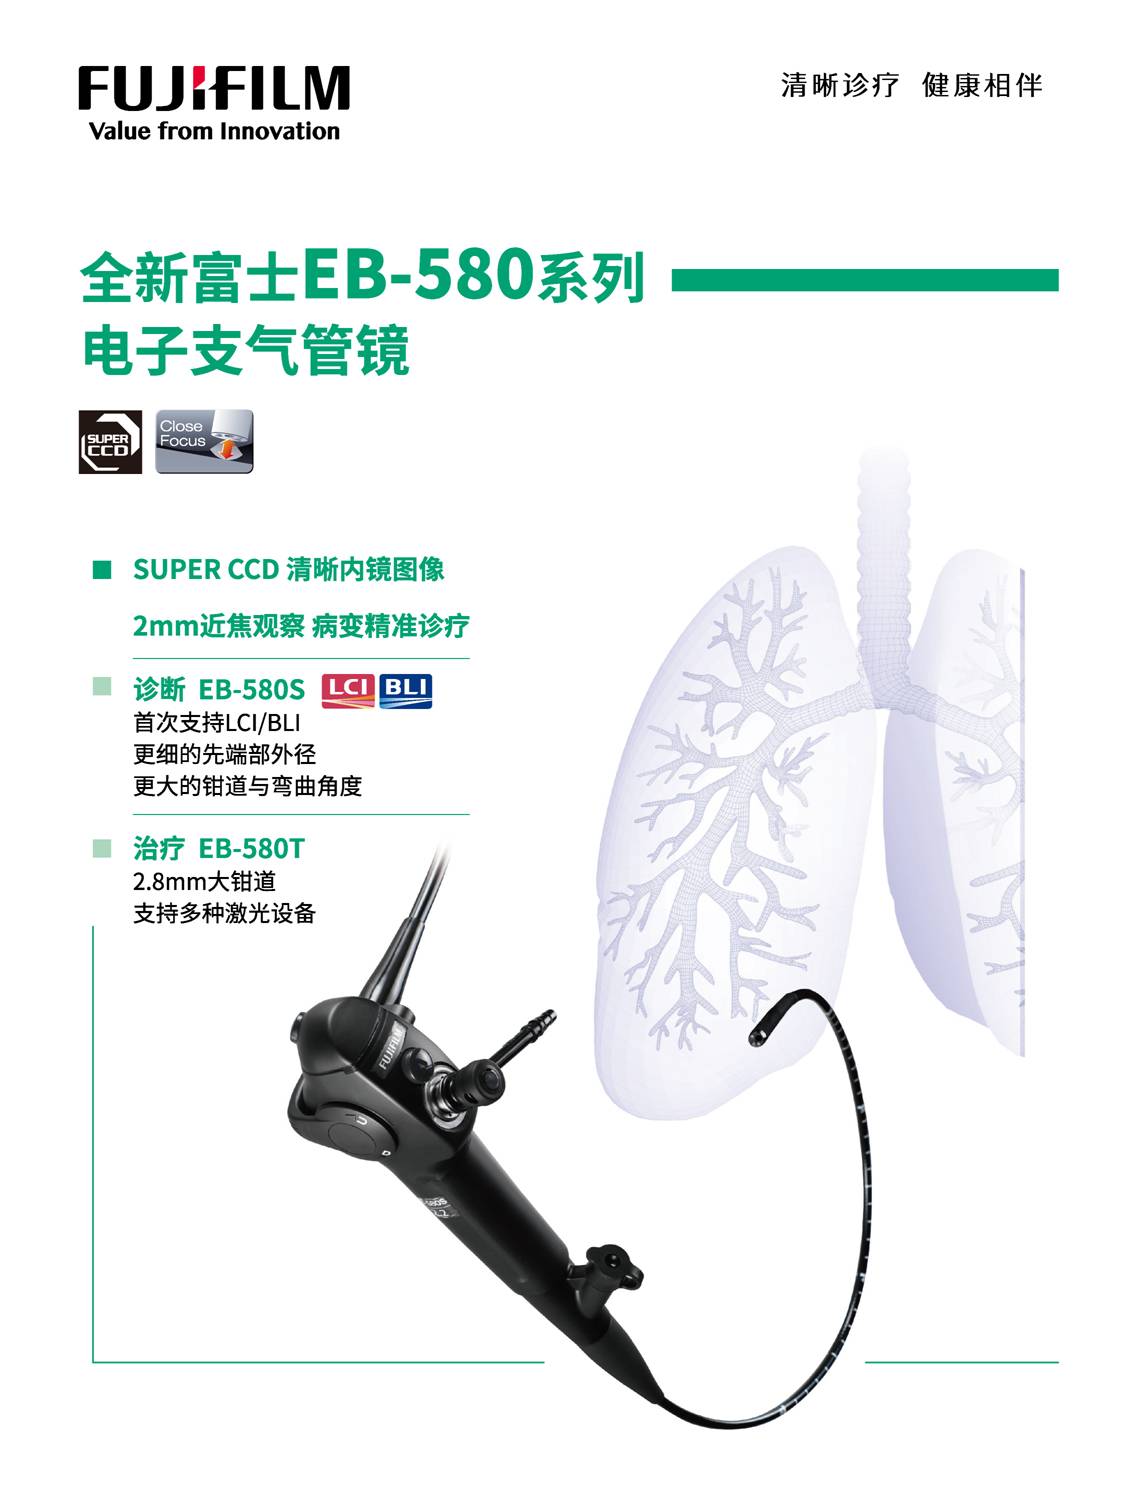 一探究“镜” 自由呼吸 ——黄陂区中医医院最新引进的电子支气管镜投入使用